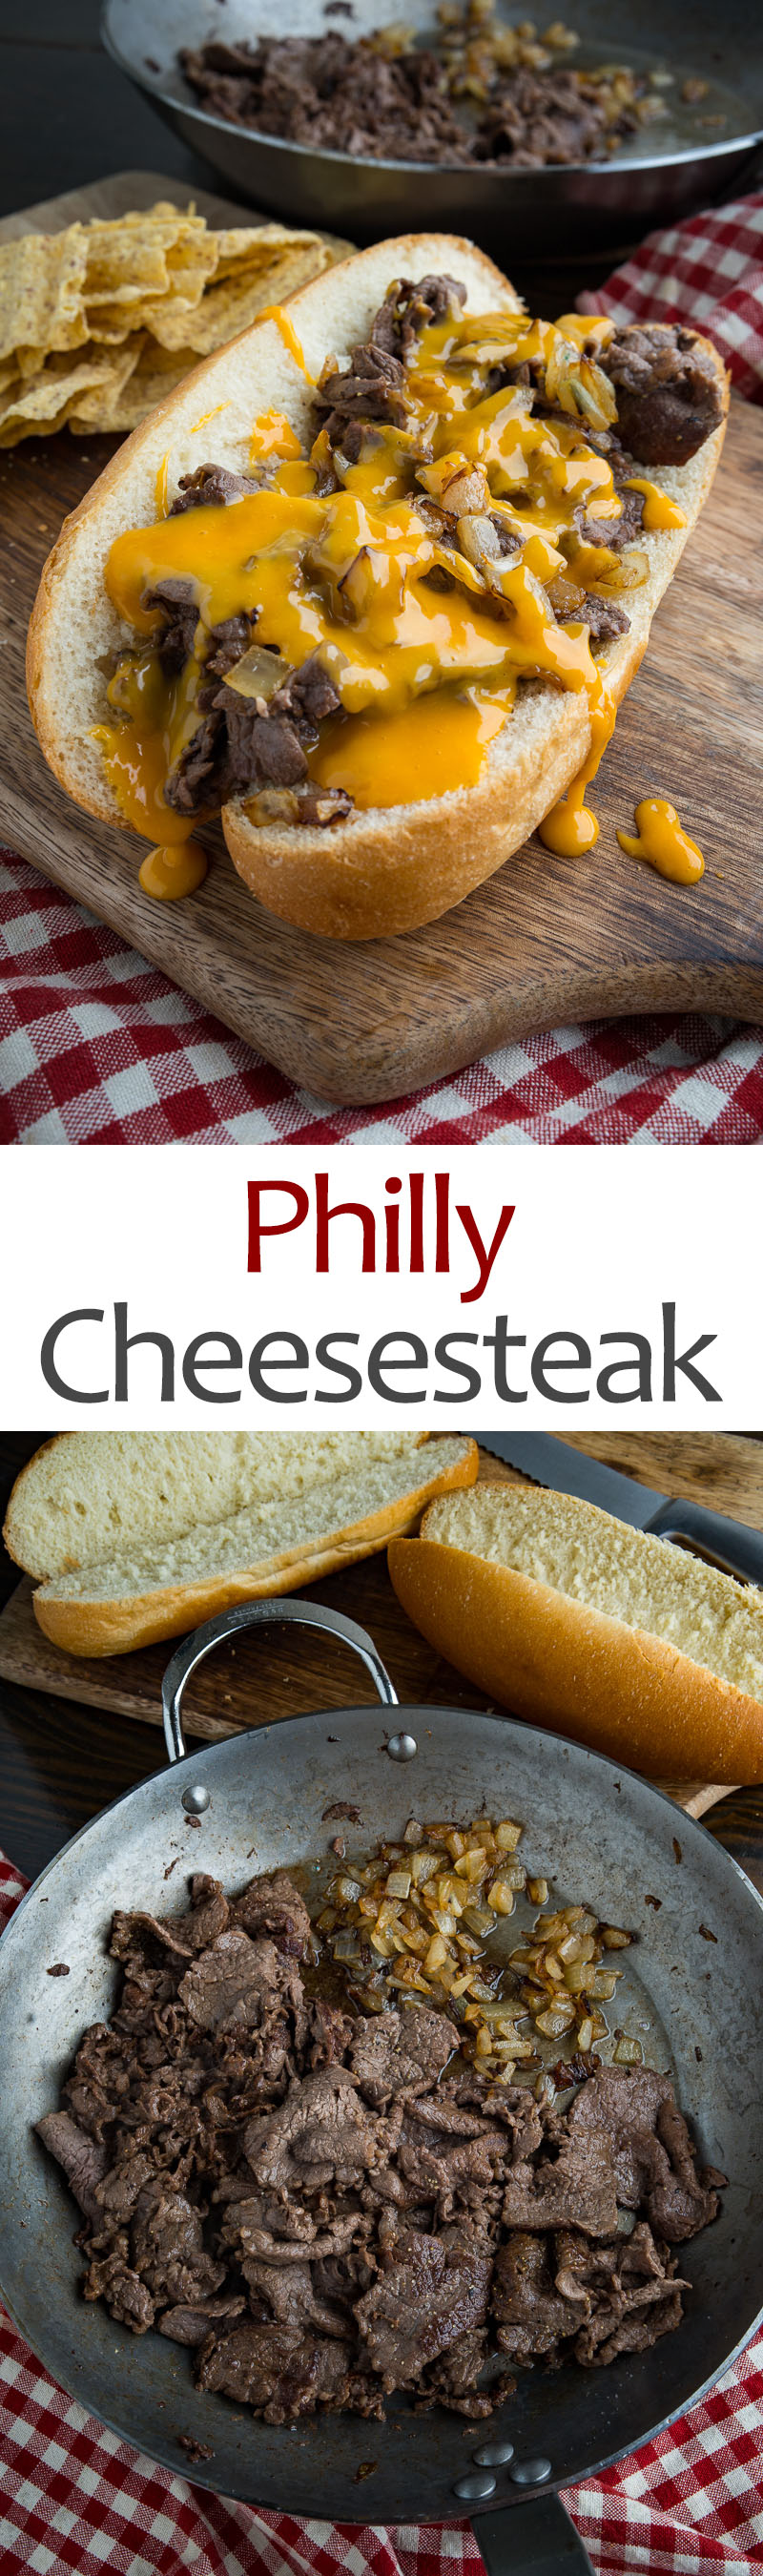 Philly Cheesesteak Sandwiches